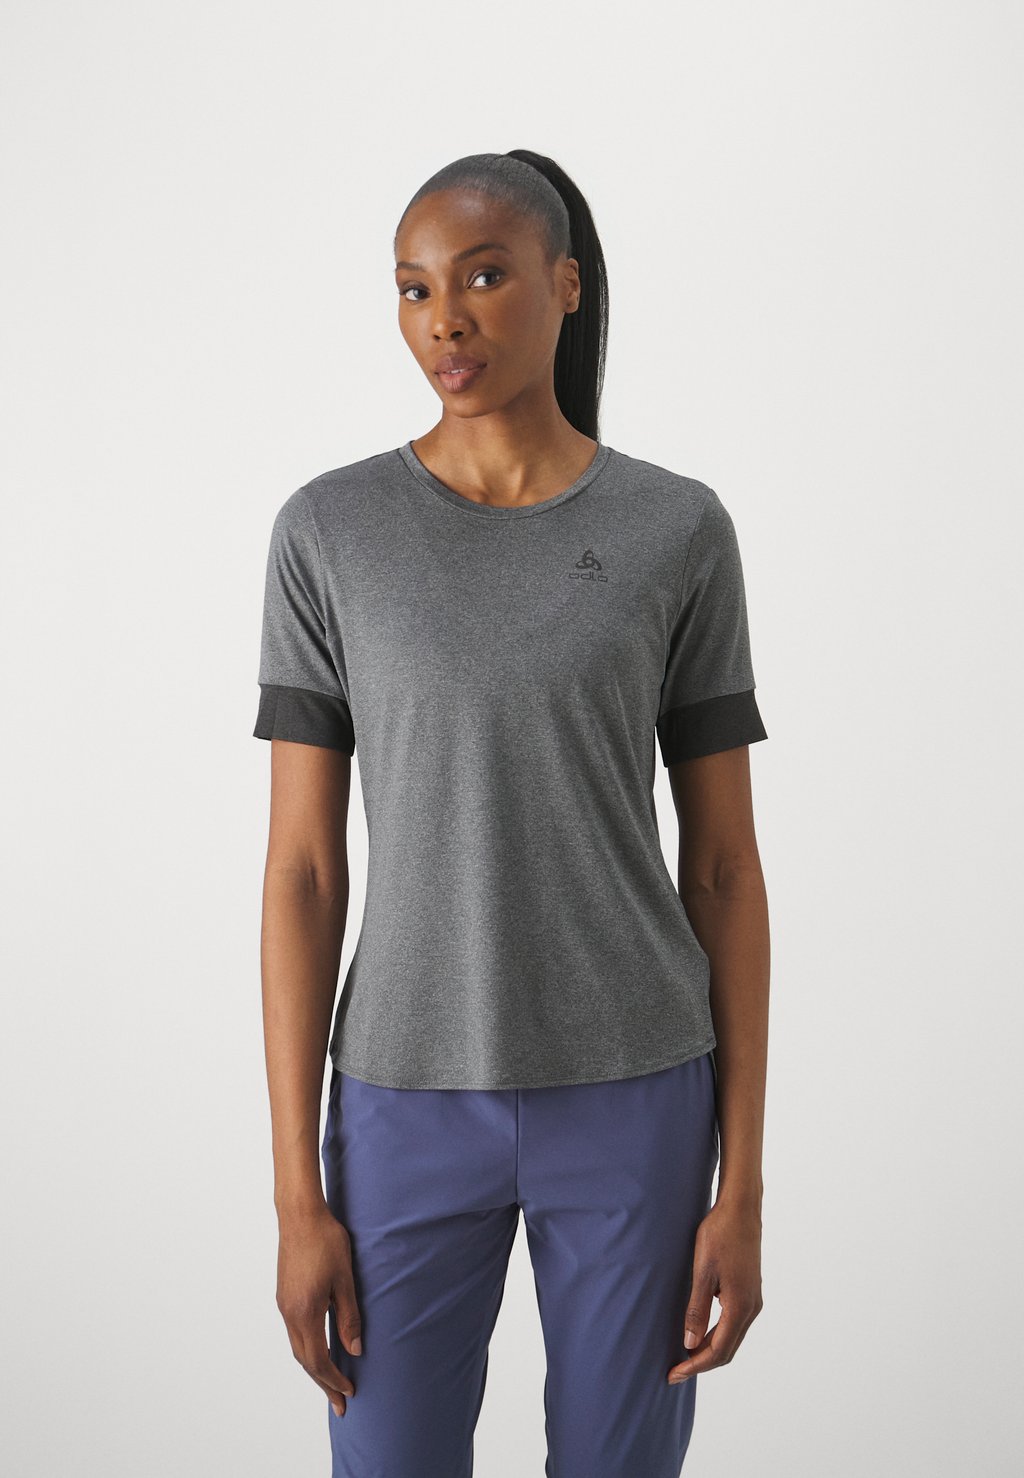 Спортивная футболка CREW NECK RIDE 365 ODLO, цвет black melange/grey melange трусы женские размер 40 цвет grey melange